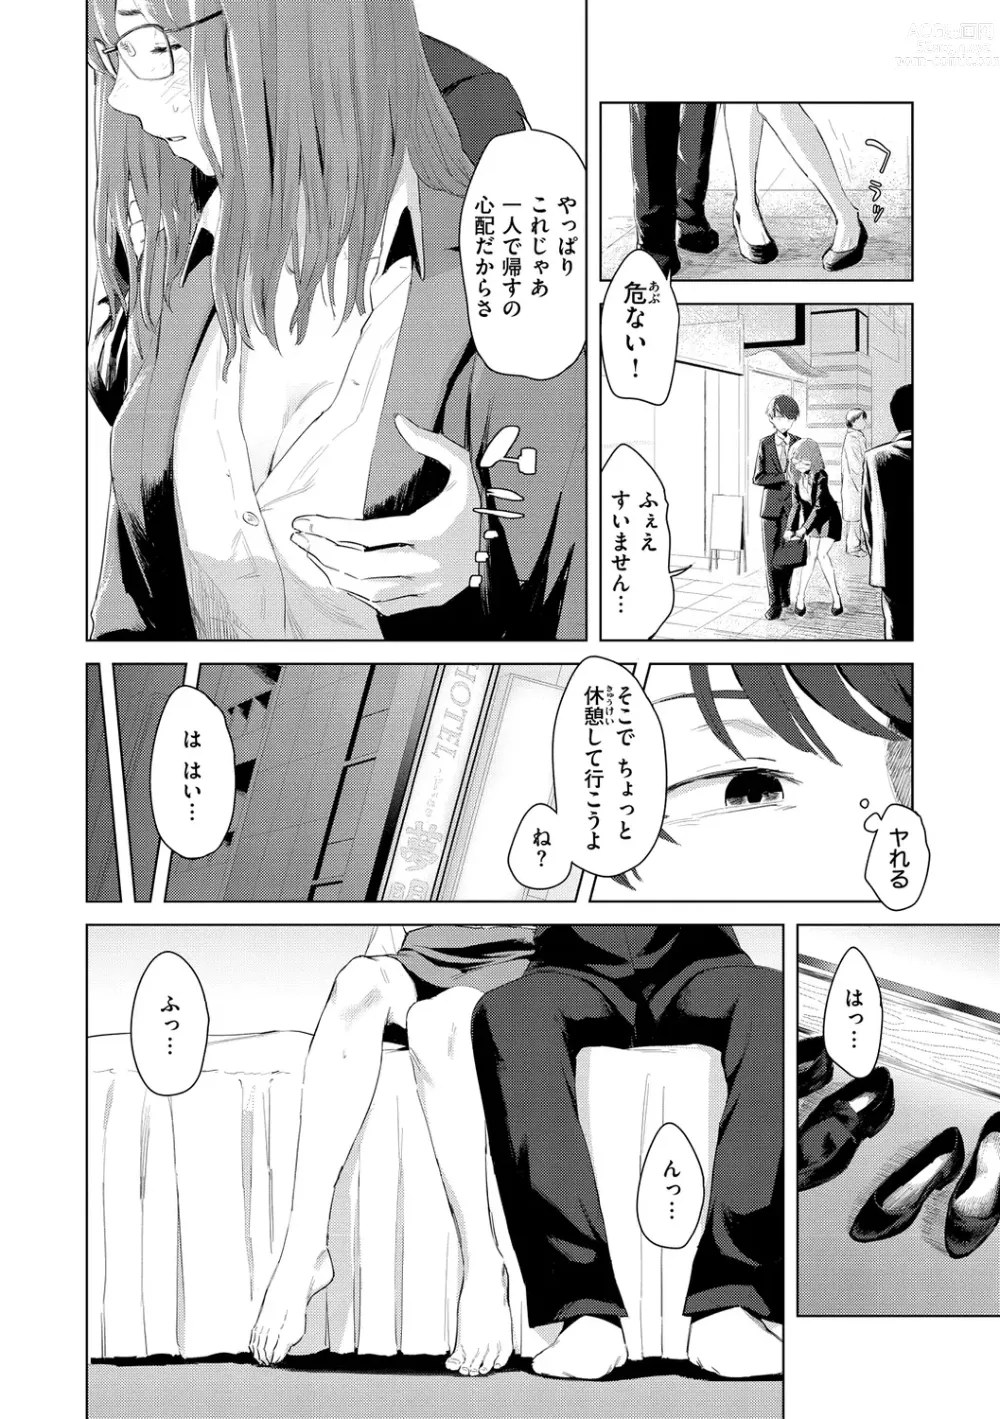 Page 6 of manga Yabai Onna